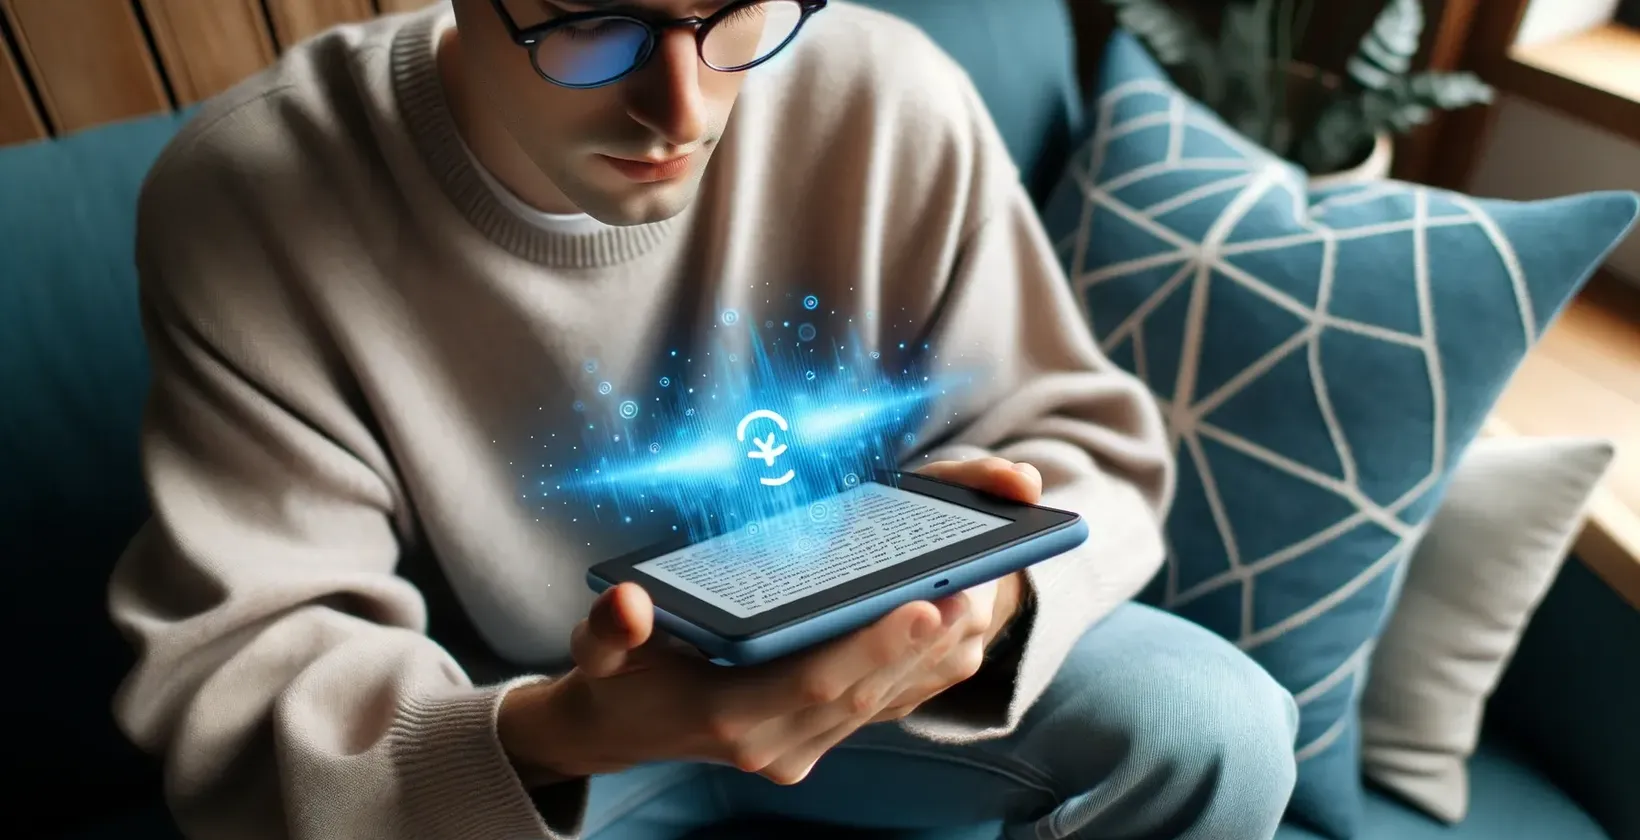 Un giovane uomo con gli occhiali utilizza un tablet, con il simbolo di un'applicazione speech-to-text che emerge dallo schermo